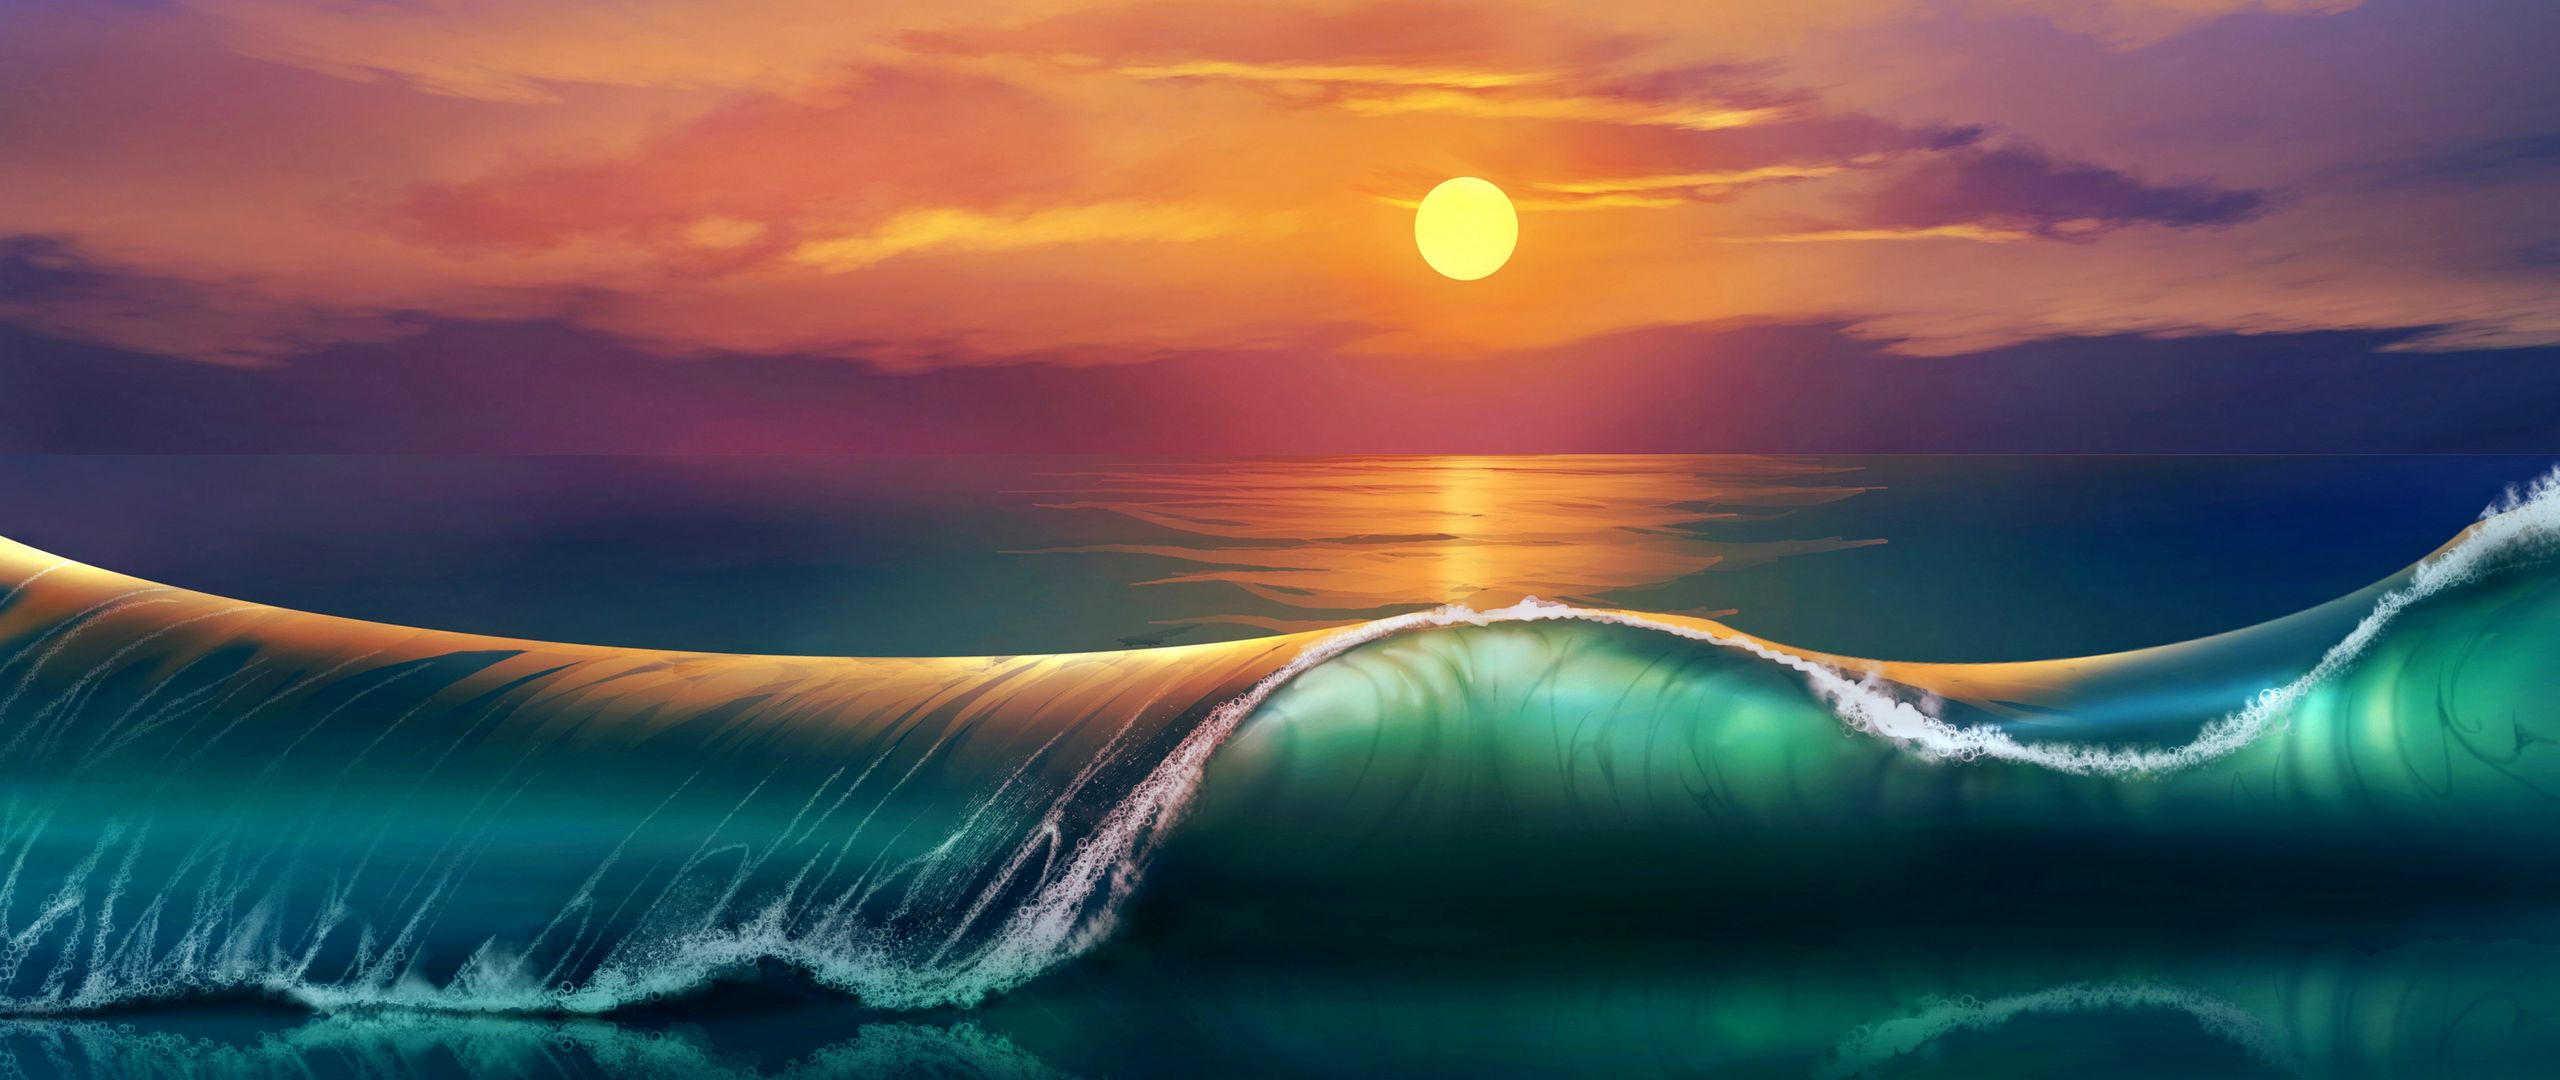 2560x1080 Wallpaper art, sunset, beach, sea, waves